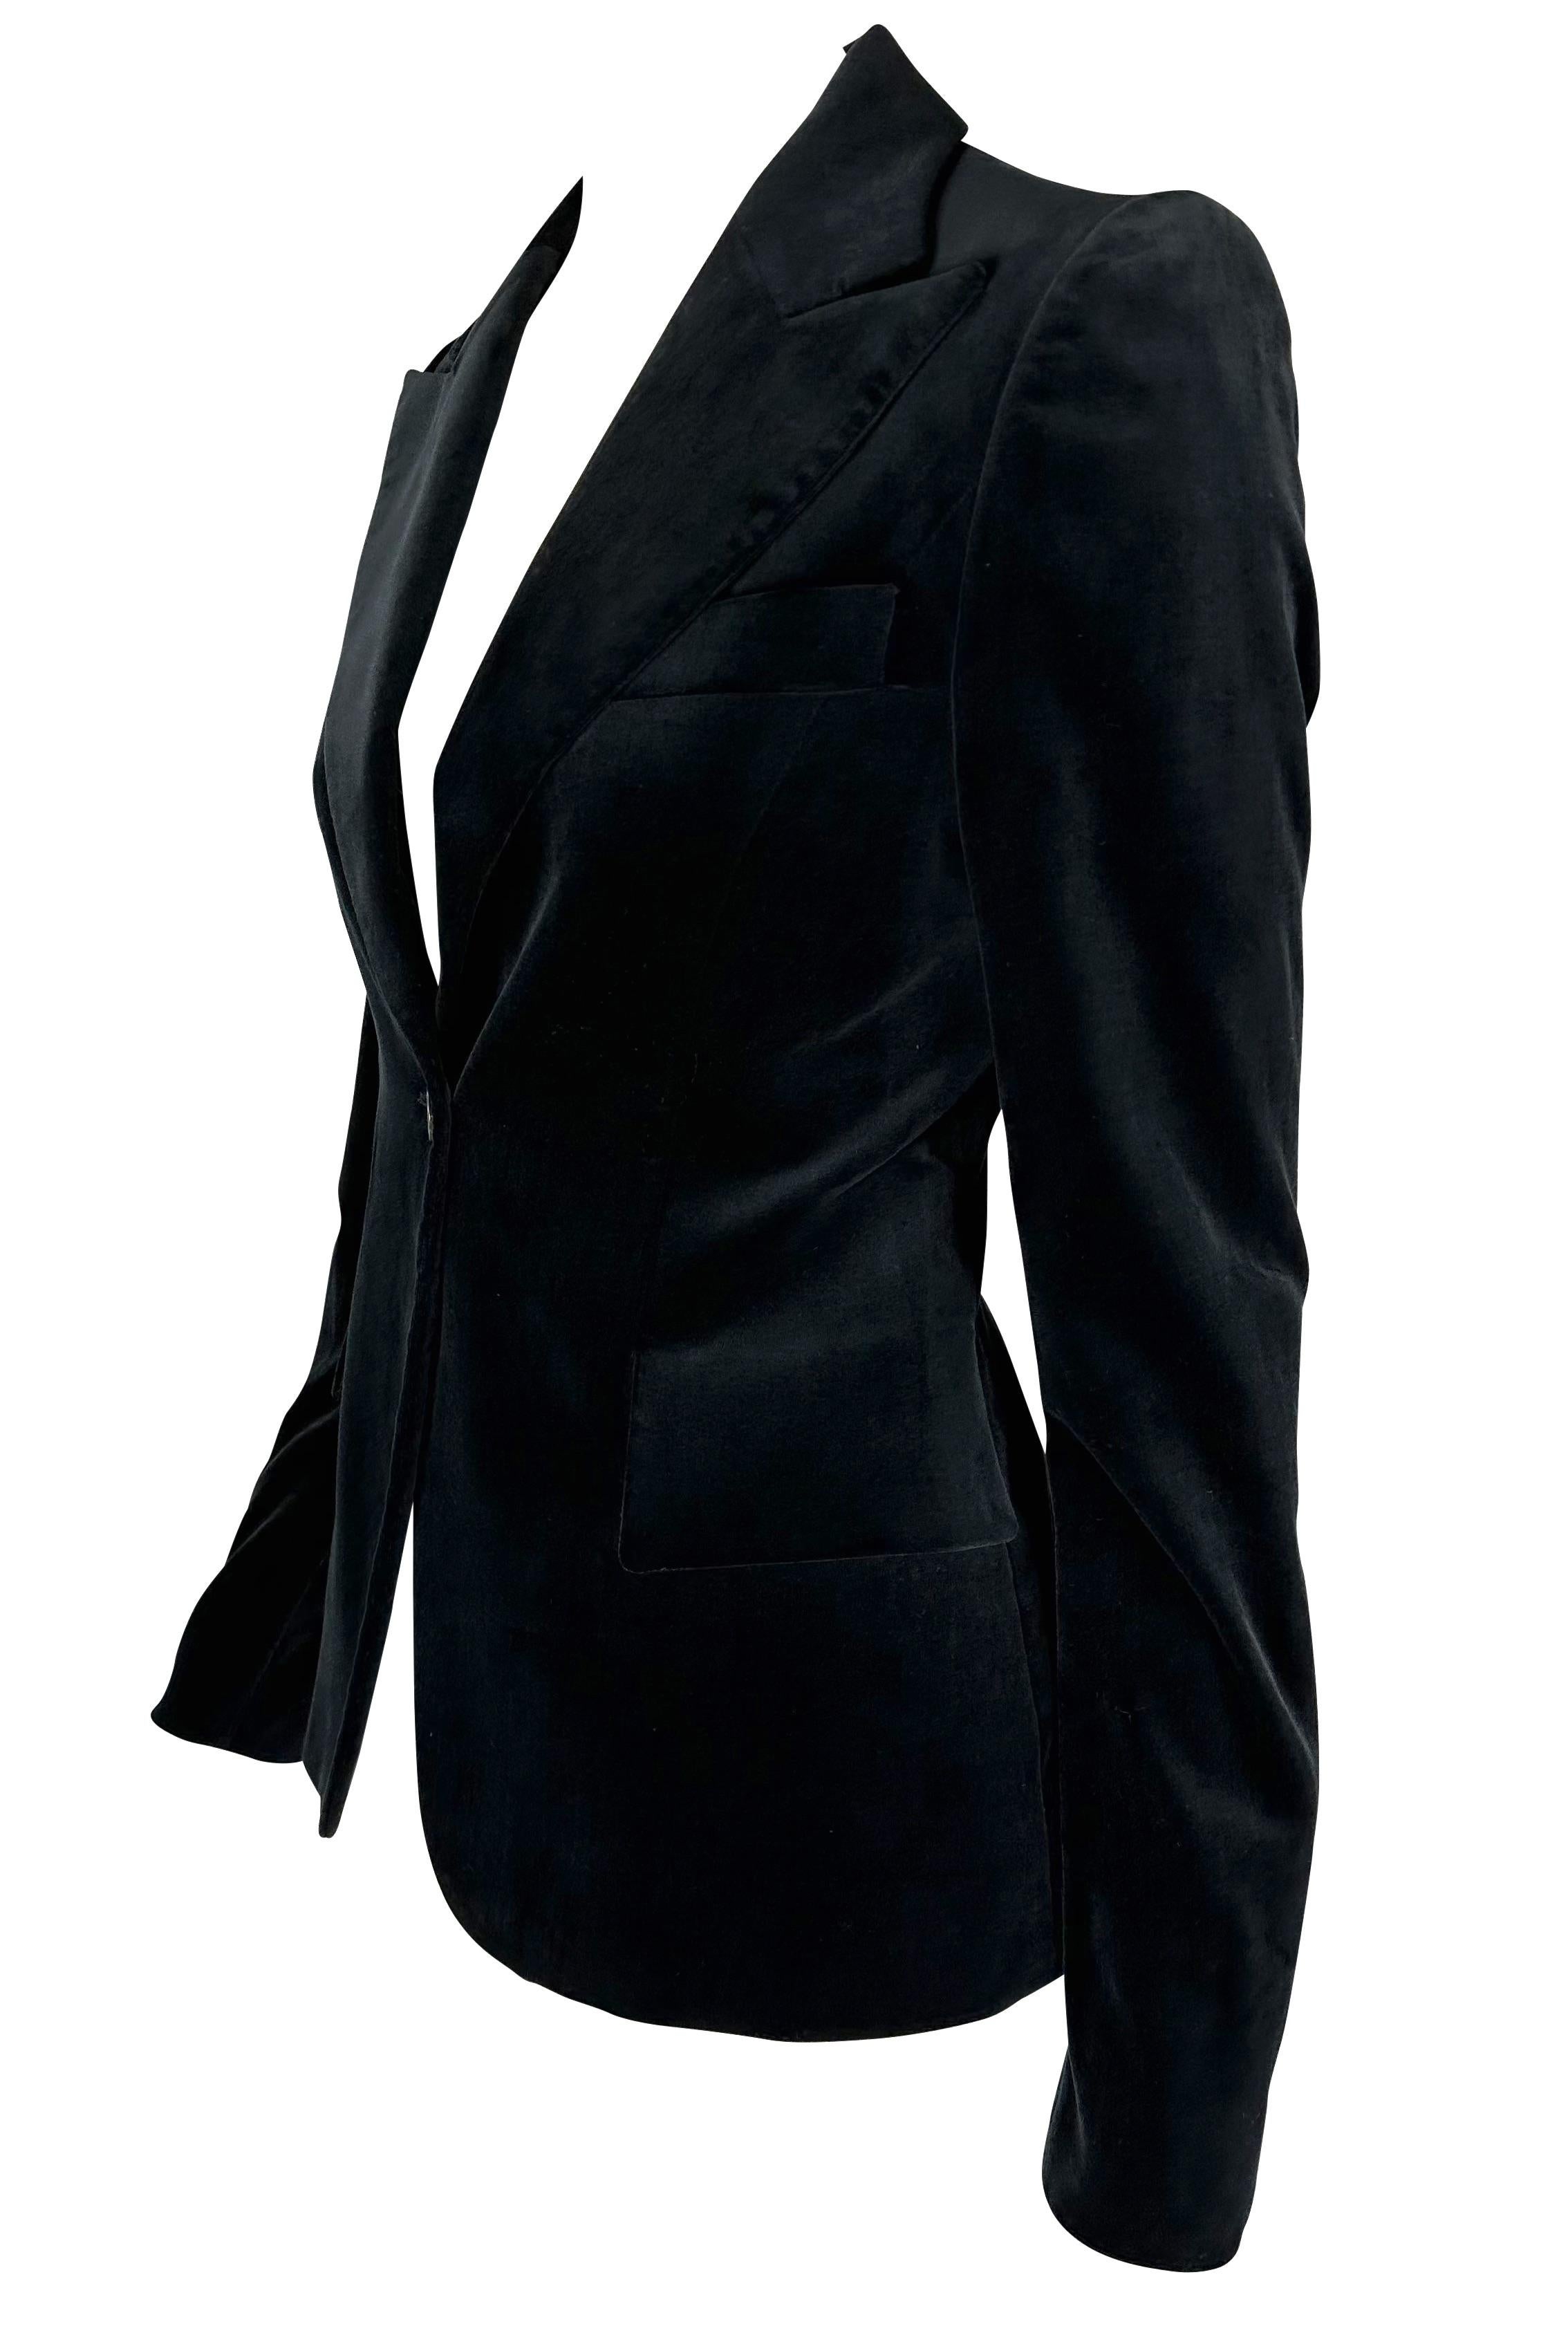 Wir präsentieren einen wunderschönen schwarzen Gucci Samtblazer, entworfen von Tom Ford. Diese fabelhafte Samtjacke aus der Herbst/Winter-Kollektion 2003 wird vorne mit einem einzigen Knopf geschlossen und ist die perfekte Ergänzung für jede